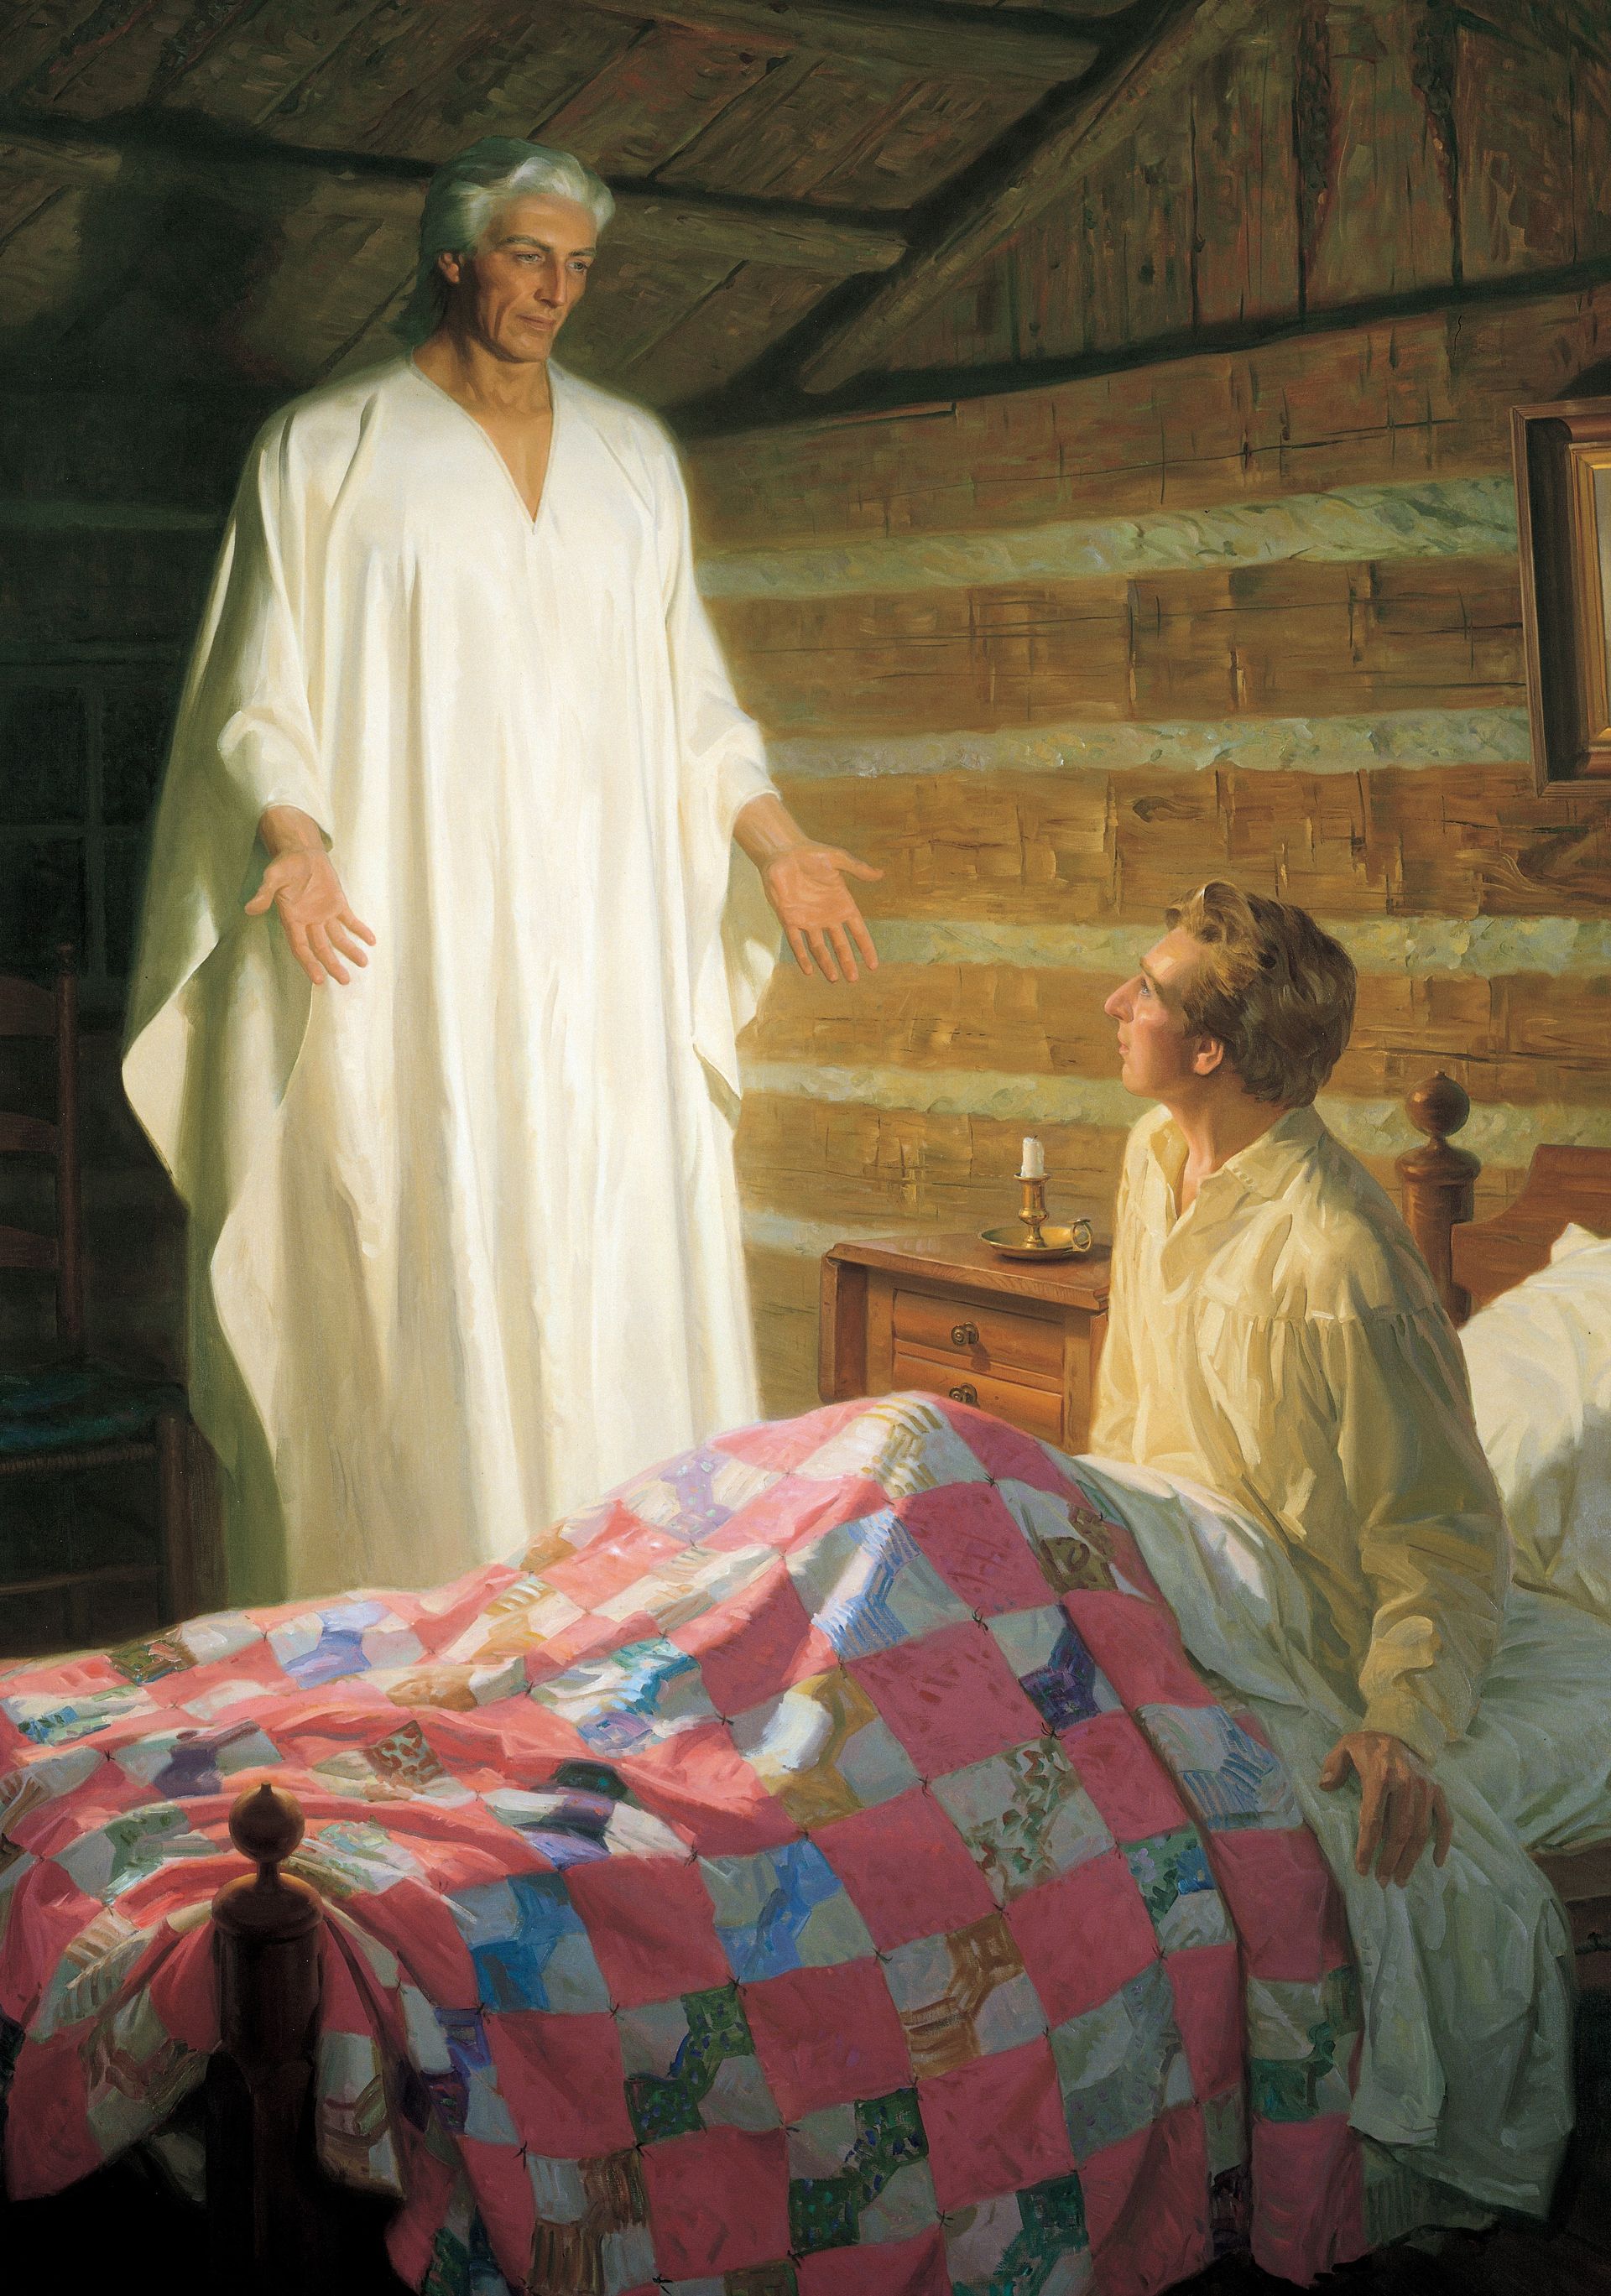 조셉 스미스의 방에서 조셉에게 나타난 모로나이(조셉 스미스에게 나타난 천사 모로나이)